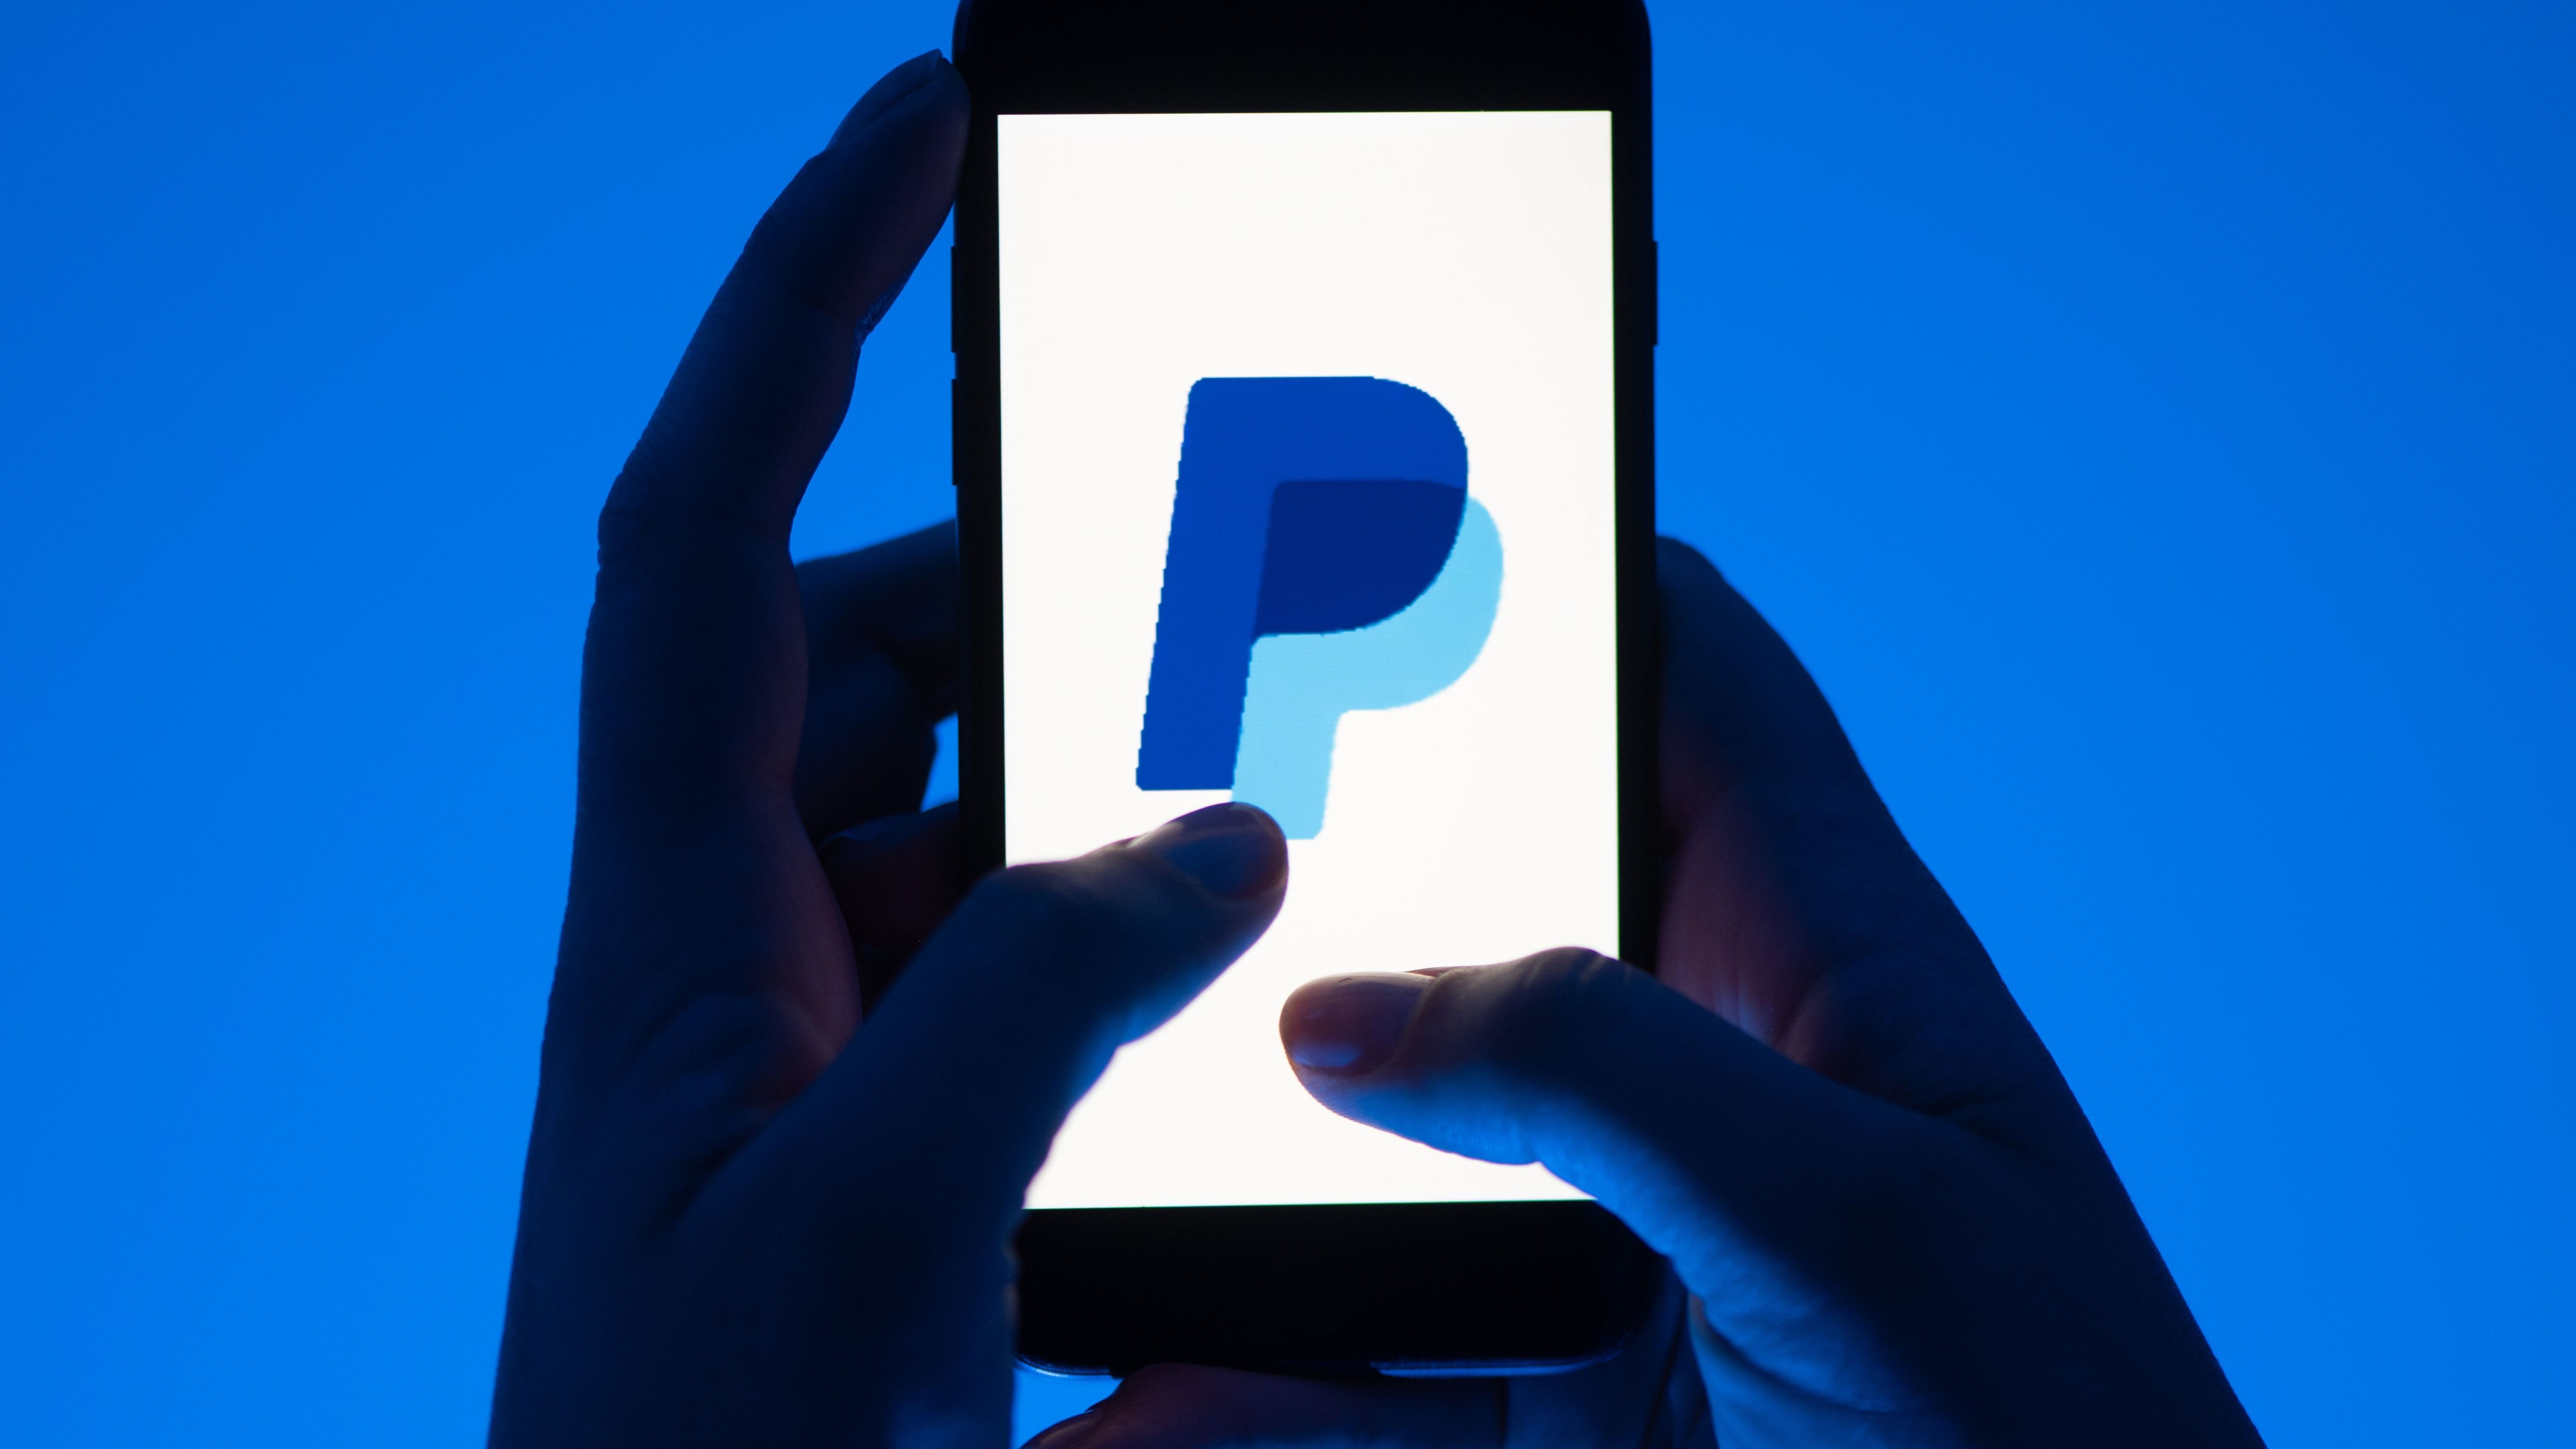 Das Bundeskartellamt hat ein Verfahren gegen den Online-Bezahldienst Paypal wegen des Verdachts der Behinderung von Wettbewerbern und der Beschränkung des Preiswettbewerbs eingeleitet.